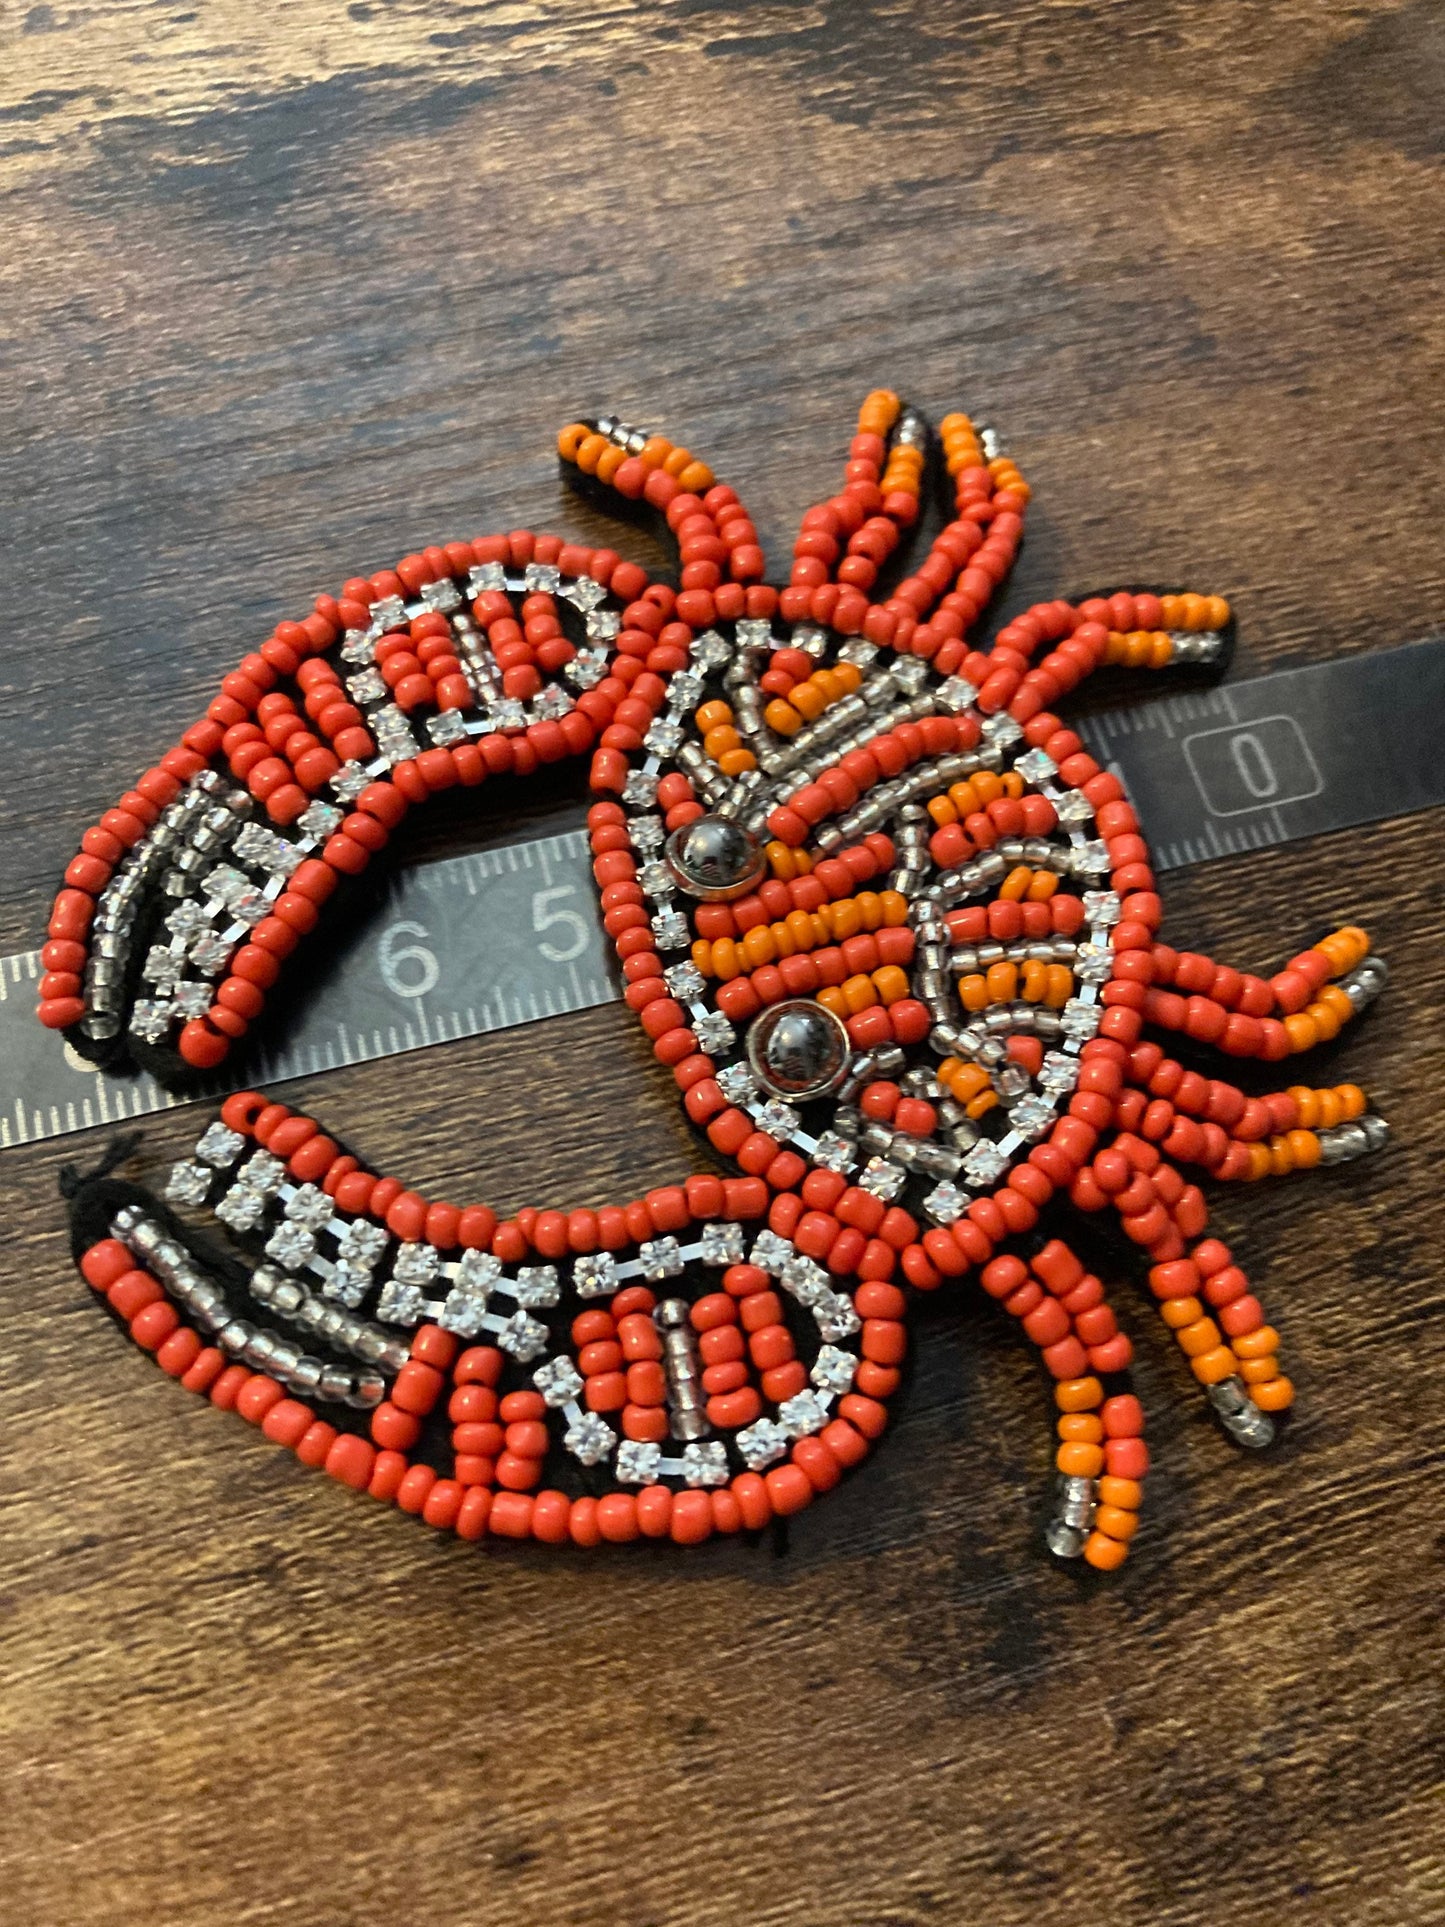 Large sew on diamanté CRAB patch 9cm x 8cm Orange seed beads peaks and diamanté appliqué